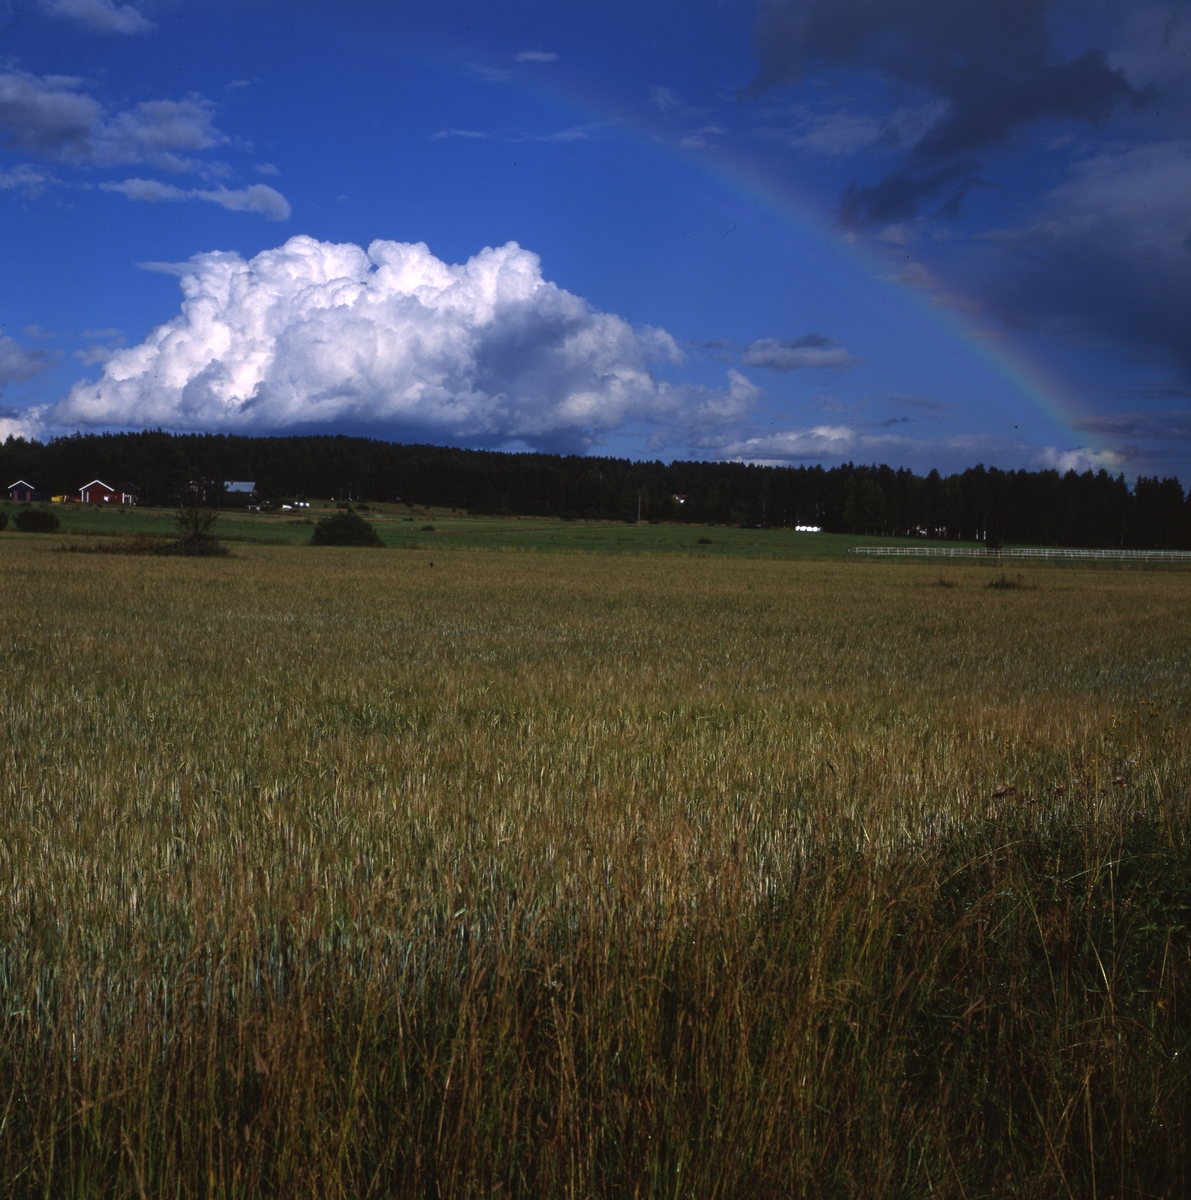 Åskmoln o svag regnbåge över gårdar och åkrar i norra Freluga, 1999.